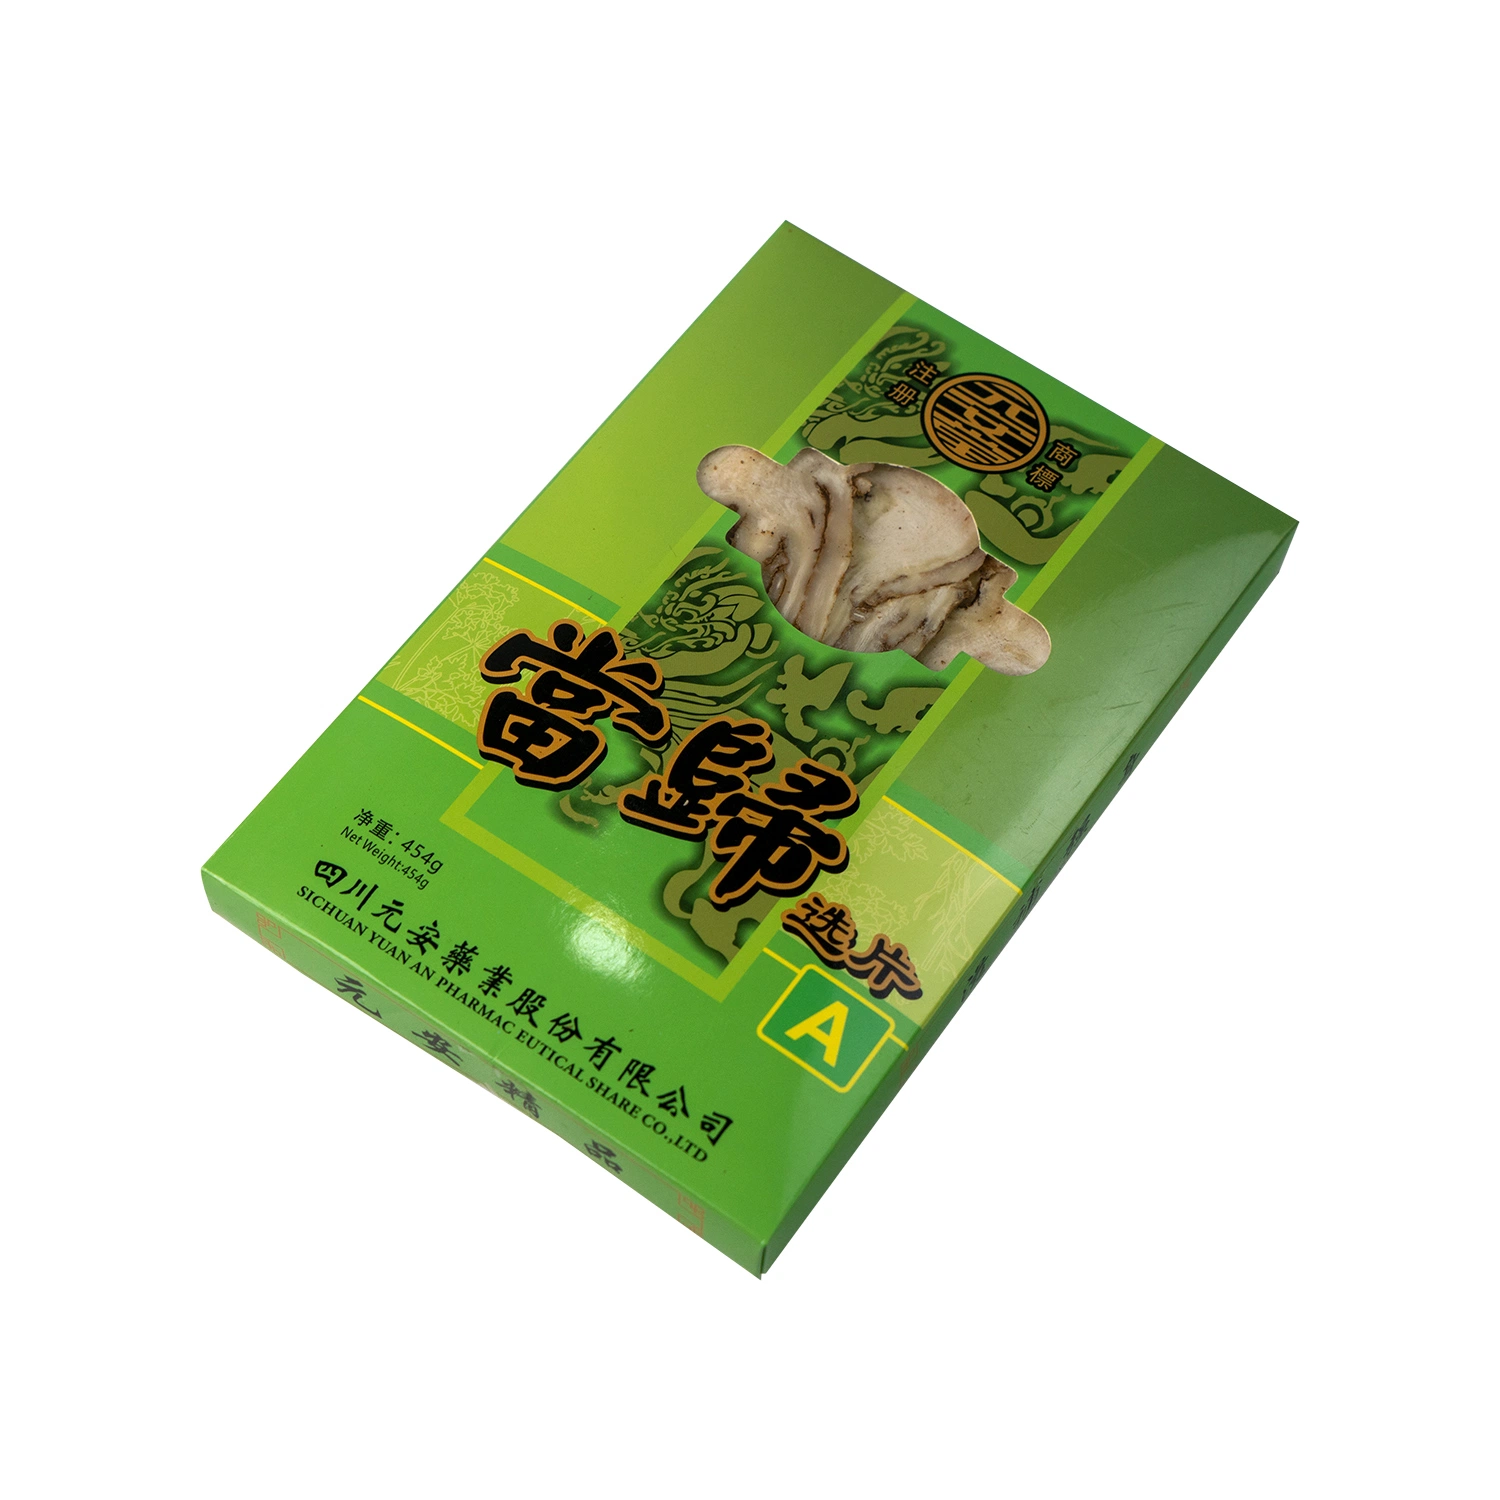 Dang de alta calidad de la GUI de hierbas tradicionales hierbas crudas en chino angélica